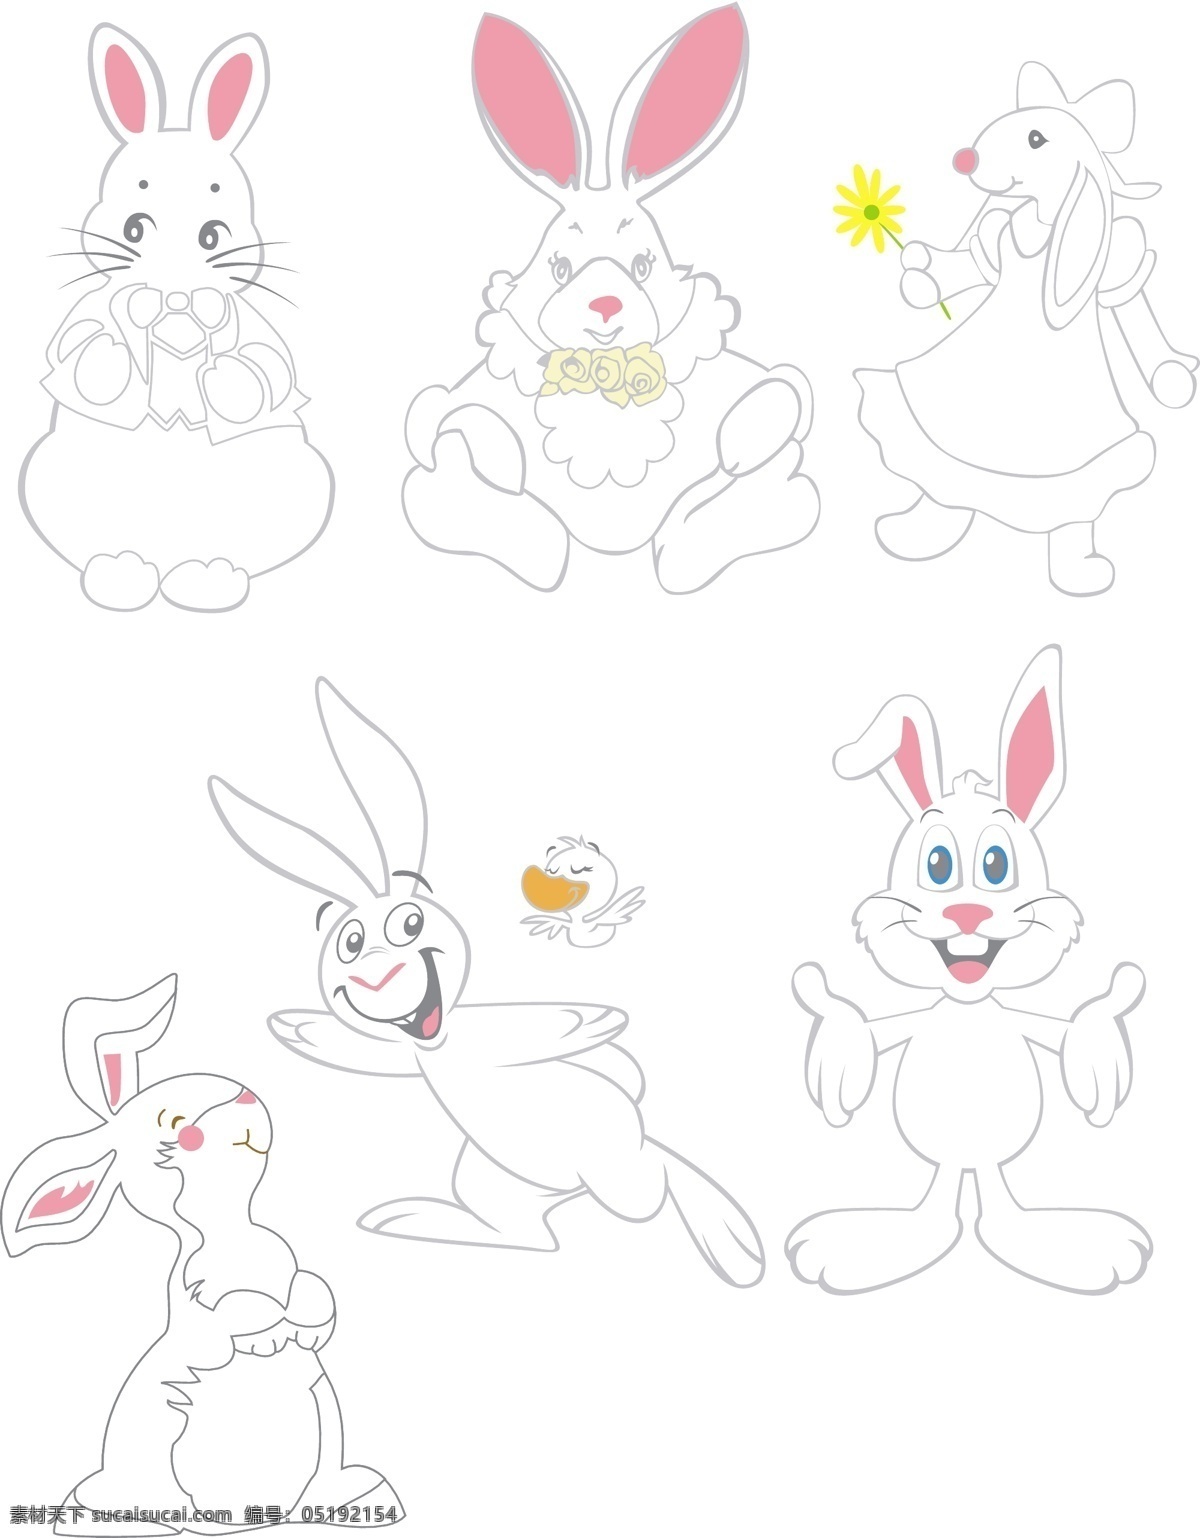 卡通 兔子 矢量 动物 蝴蝶结 花朵 漫画 模板 设计稿 素材元素 图案 线描 鸭子 源文件 矢量图